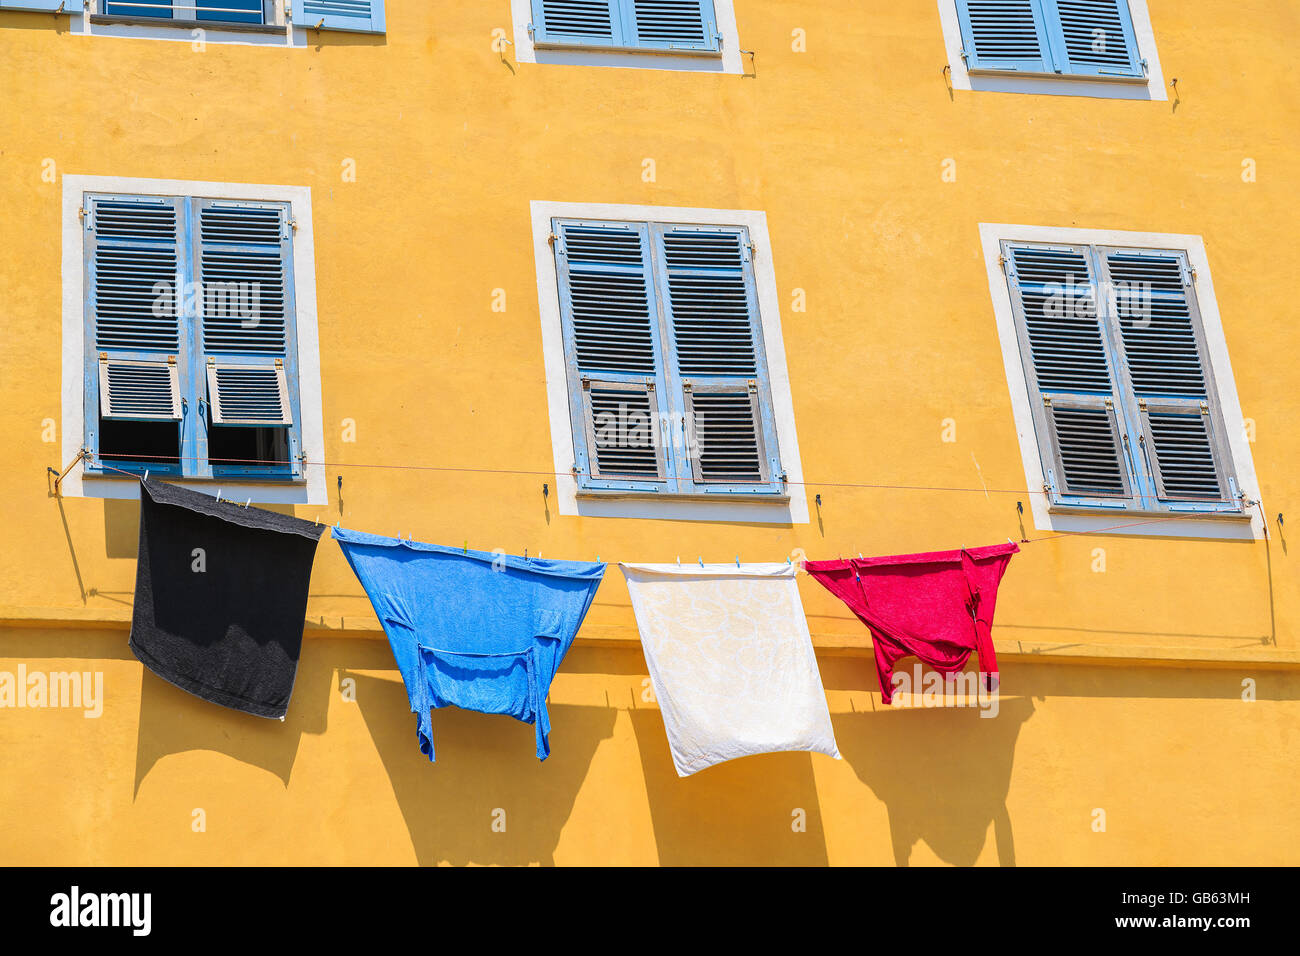 Blanchisserie hanging out d'une façade de maison typiquement corse à Bastia, ville de l'île Corse, France Banque D'Images